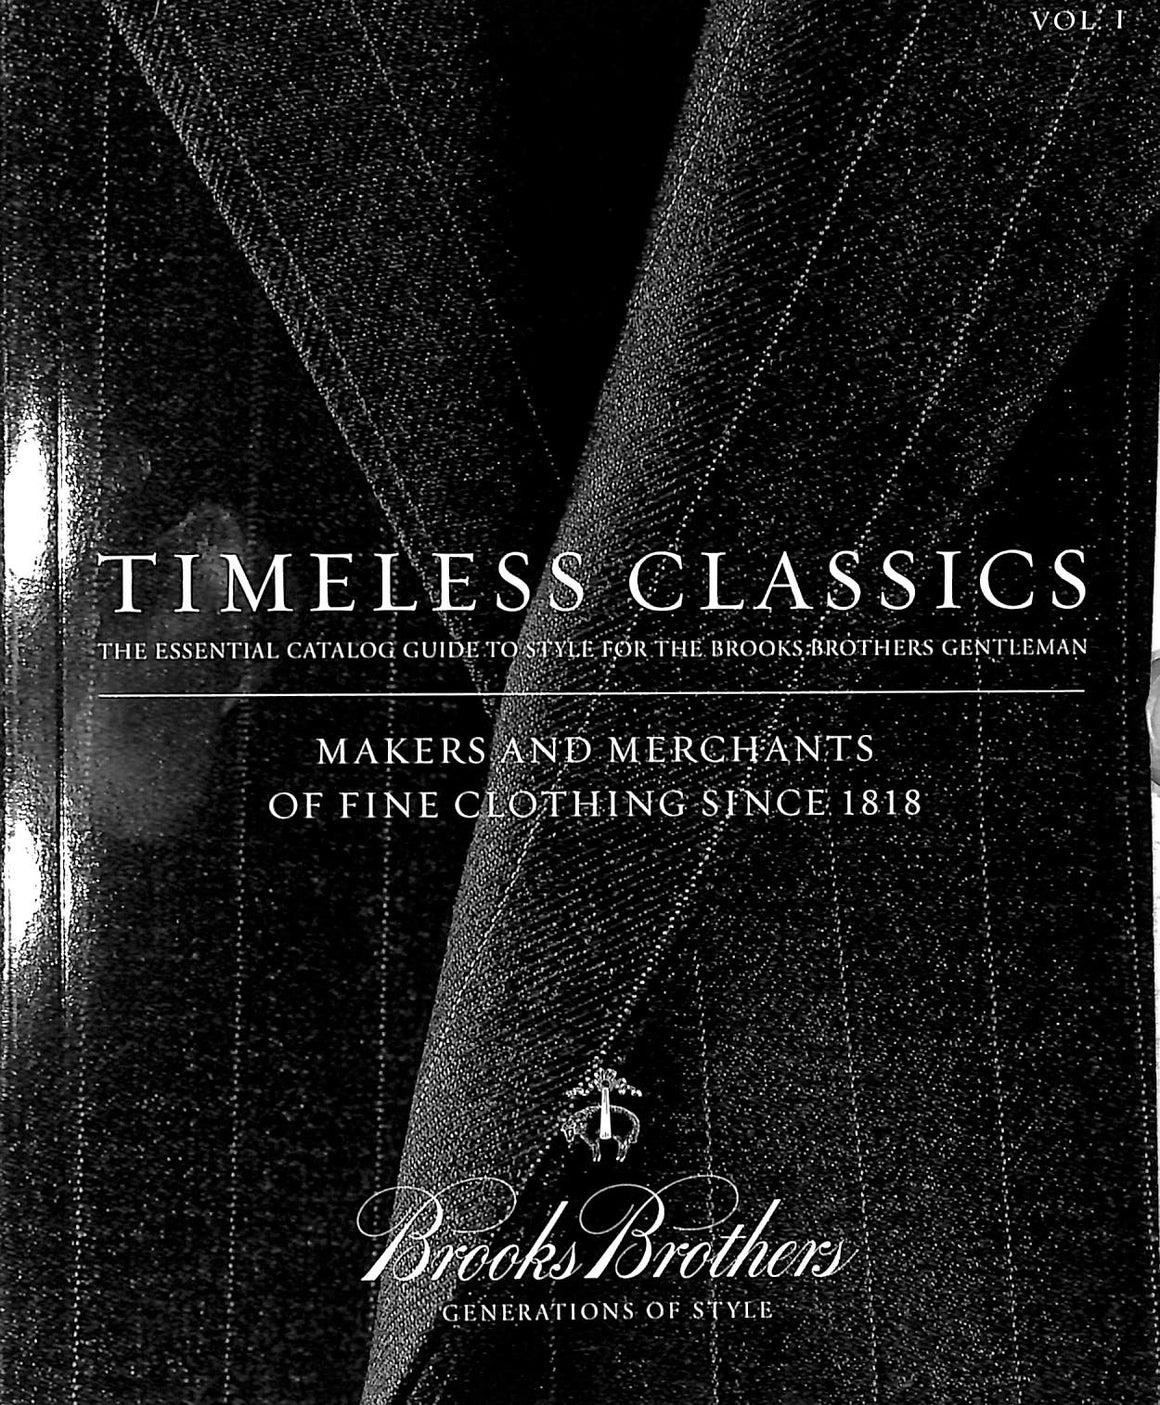 "Brooks Brothers Timeless Classics Vol I" 2008